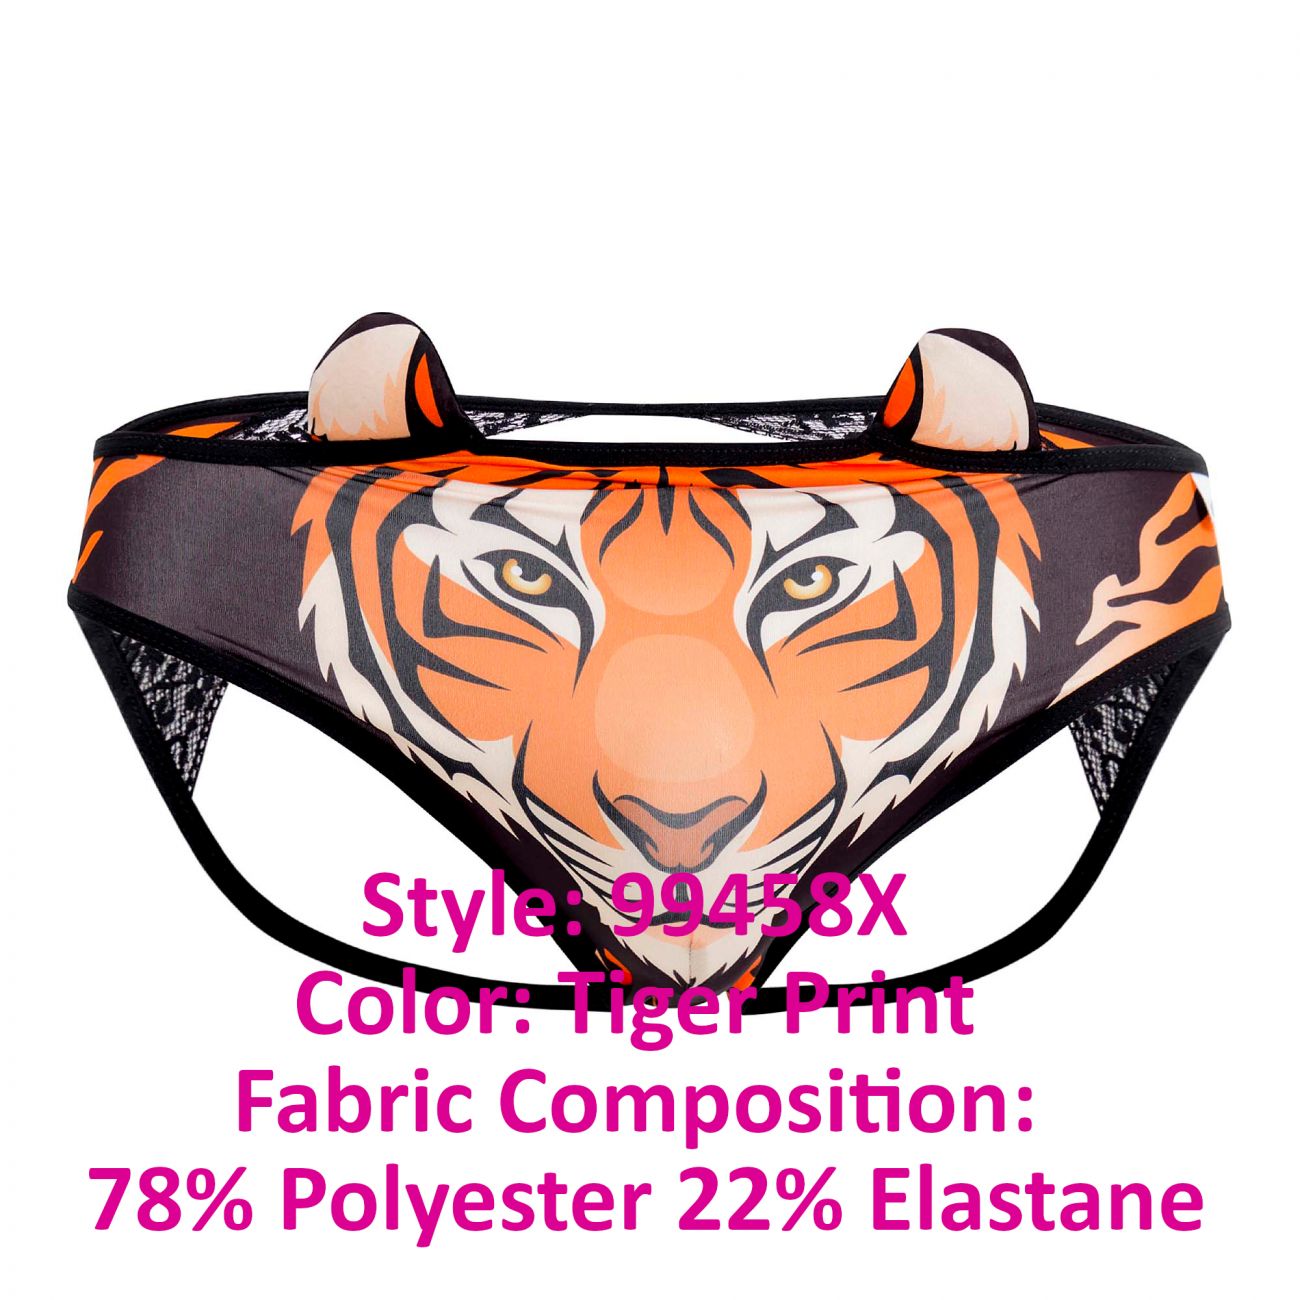 SALE - CandyMan 99458X Jockstrap Color Tiger Print Plus Sizes